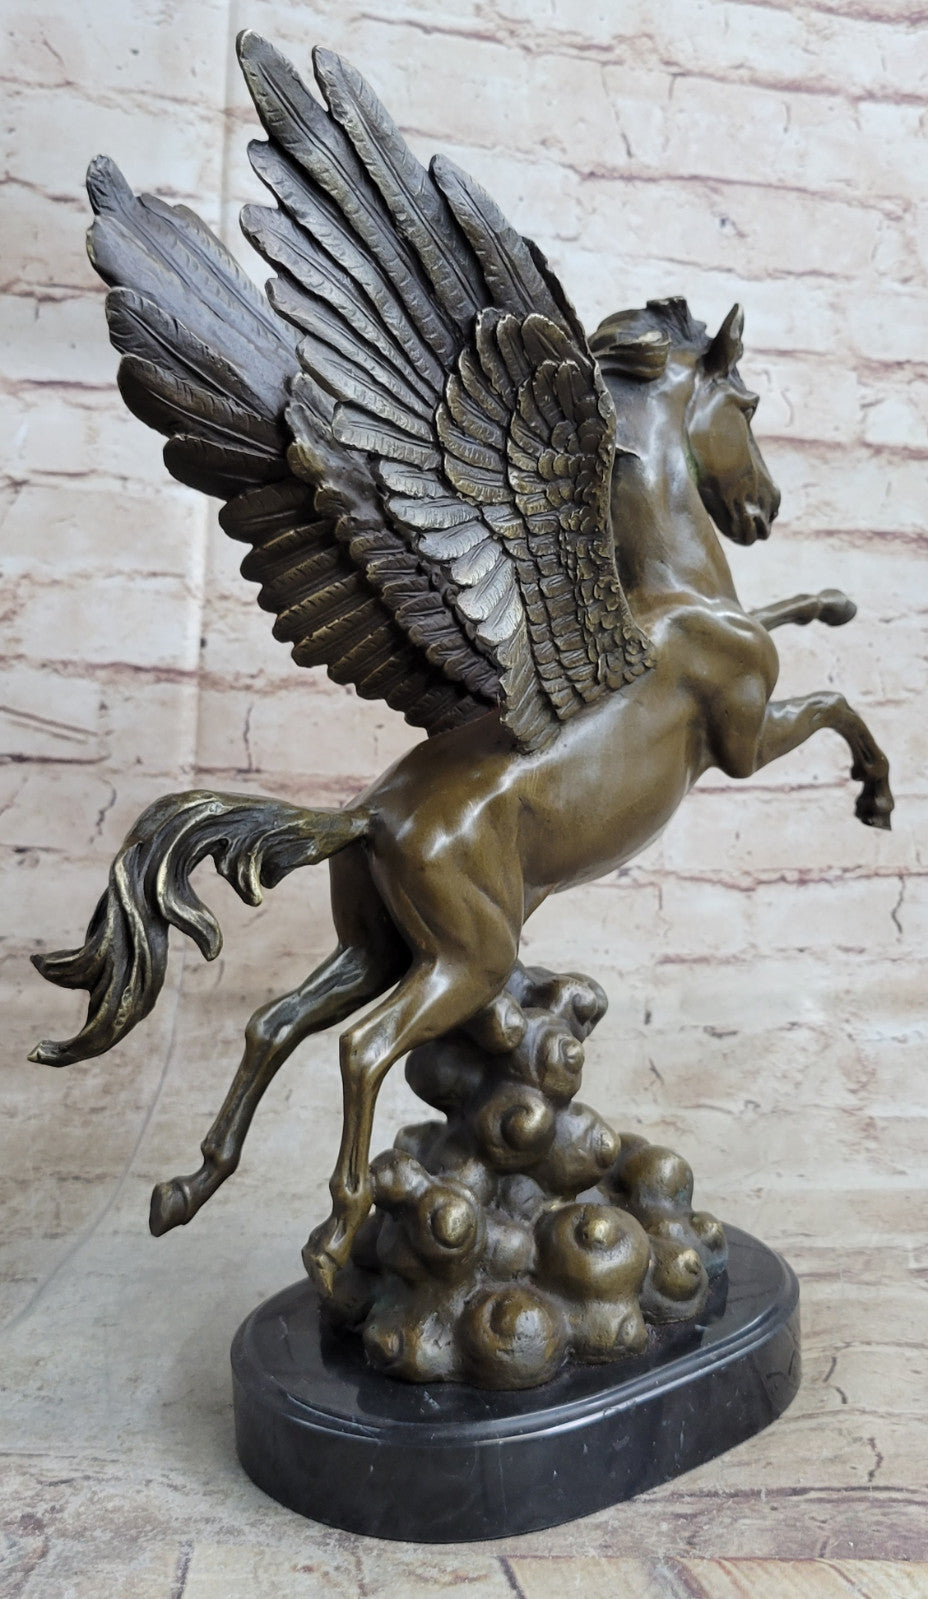 Handcrafted Genuine Real Bronze Sculpture Pegasus UniqueClassic Artwork Figurine